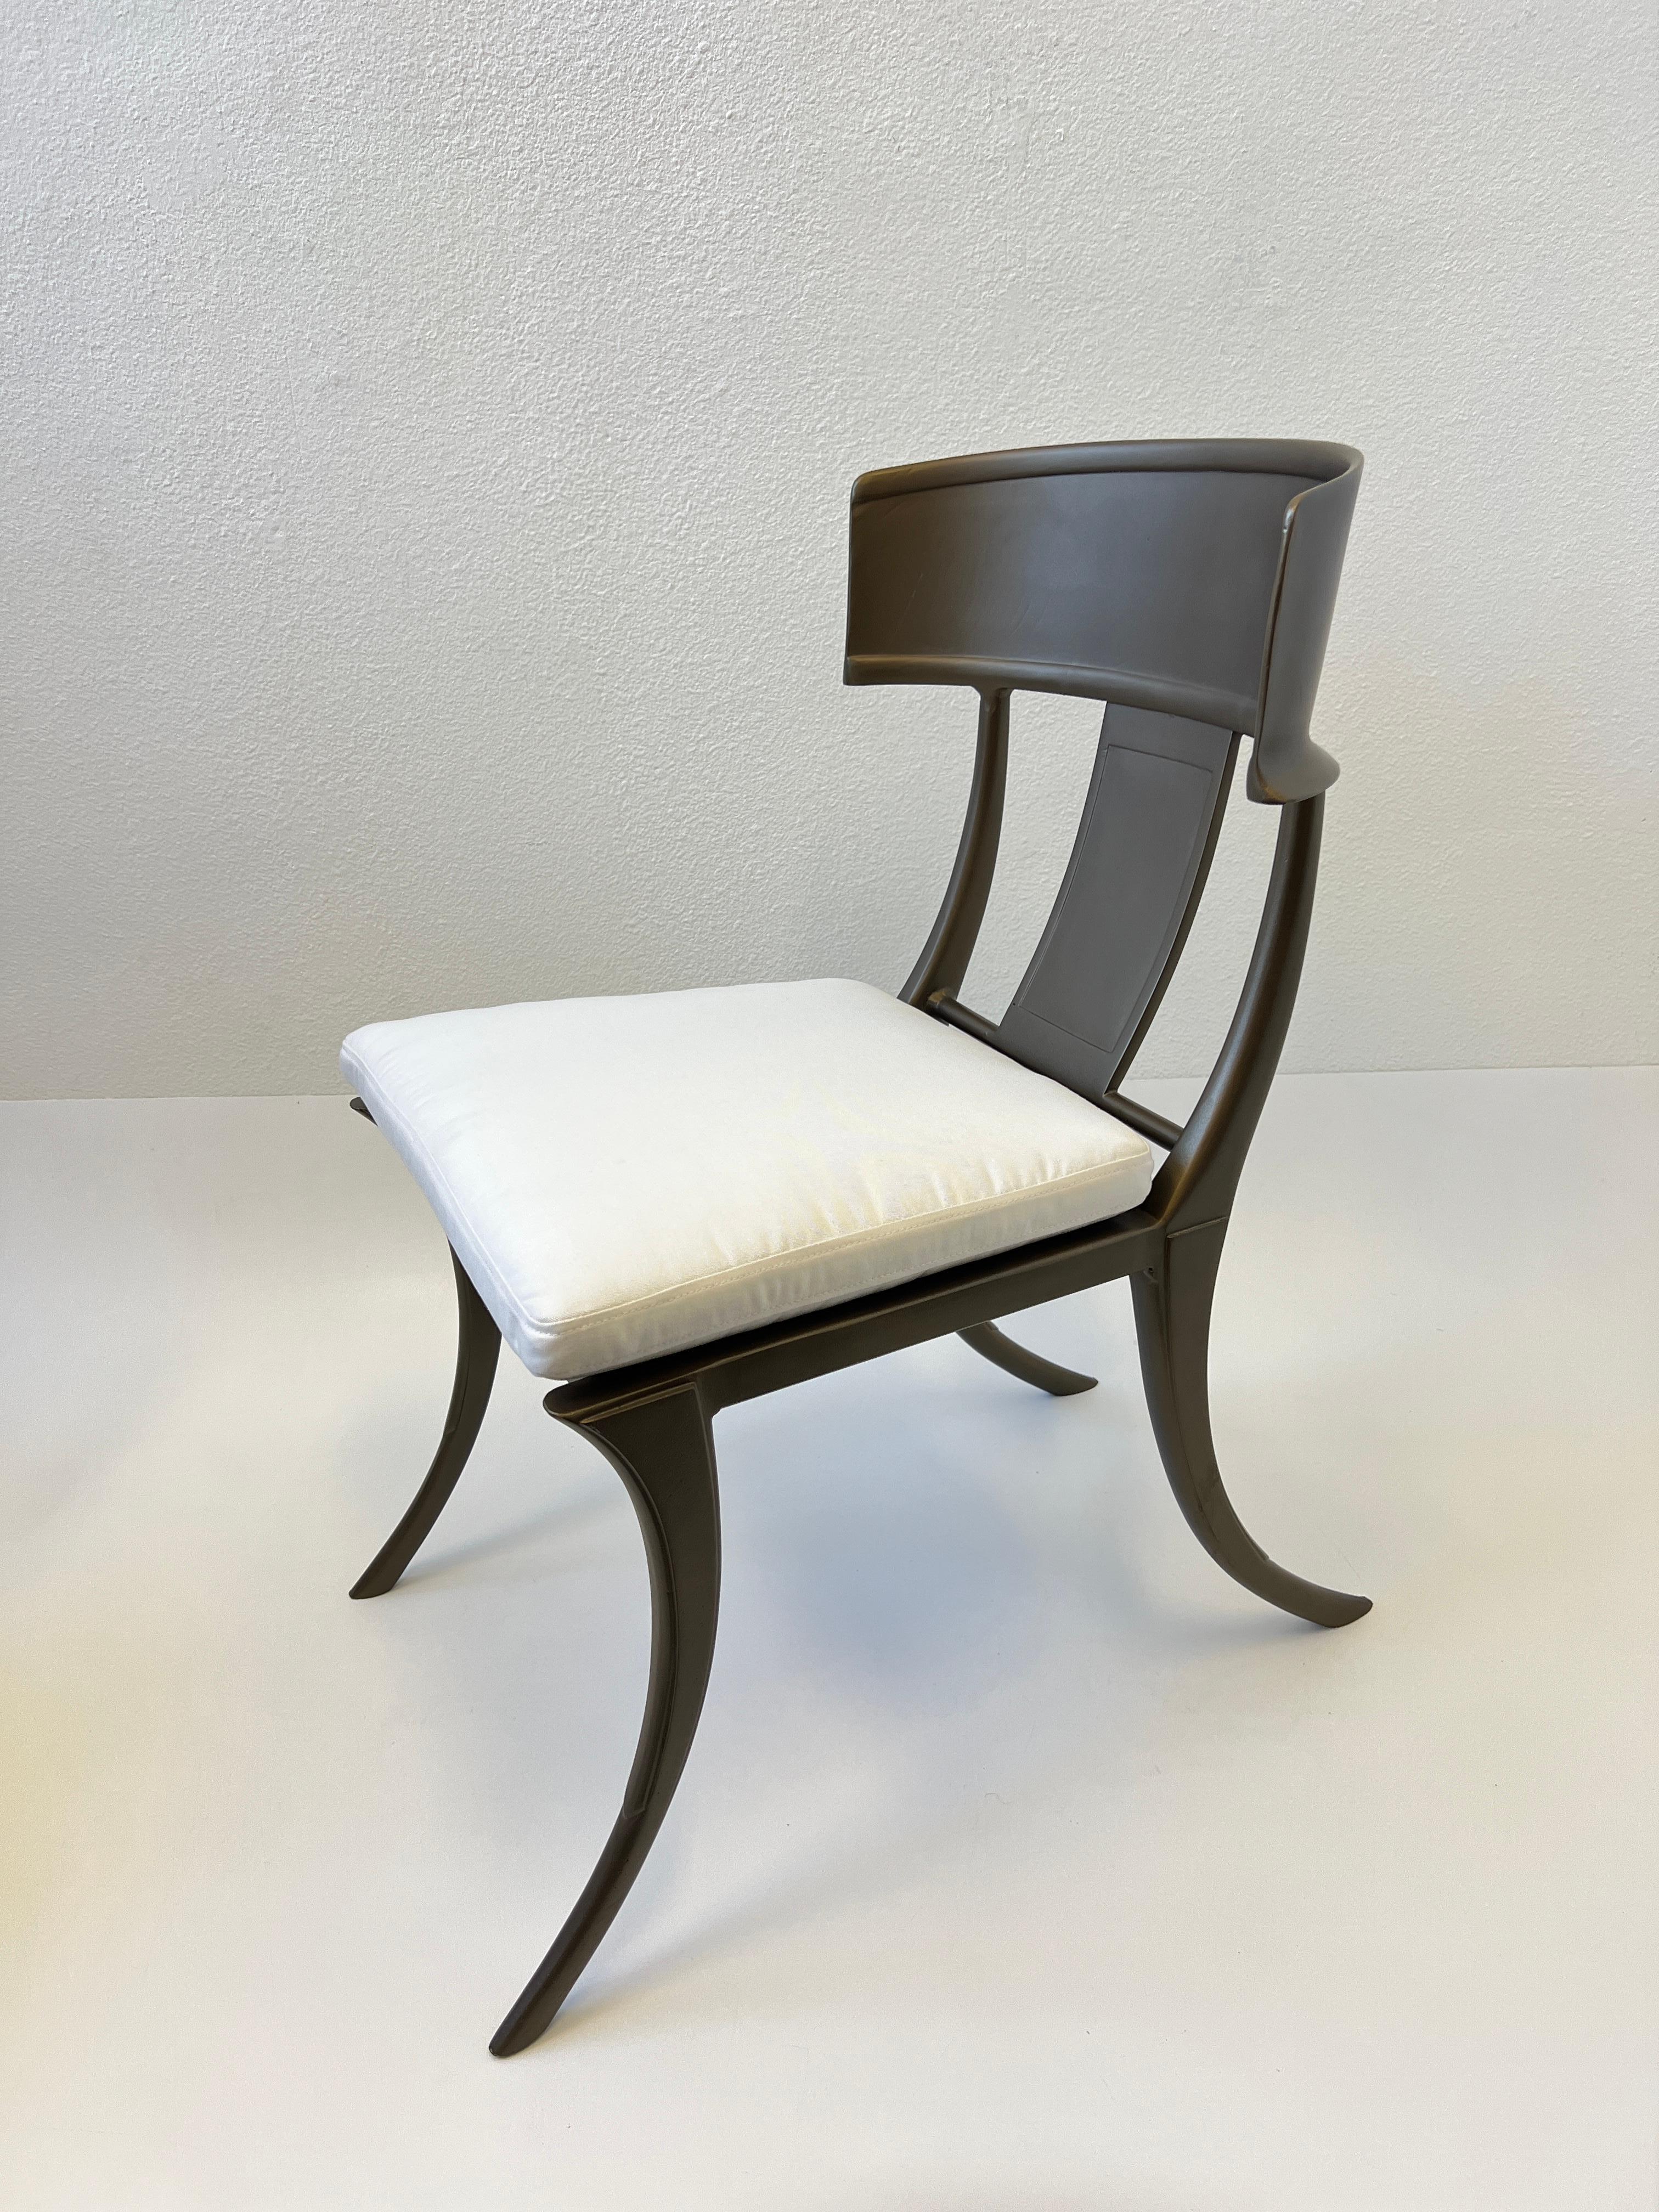 Ensemble de six chaises de jardin klismos en aluminium recouvert de poudre de bronze par Michael Taylor.

Nouveau revêtement en poudre et nouveaux coussins en tissu Sunbrella blanc. 

Dimensions : 20